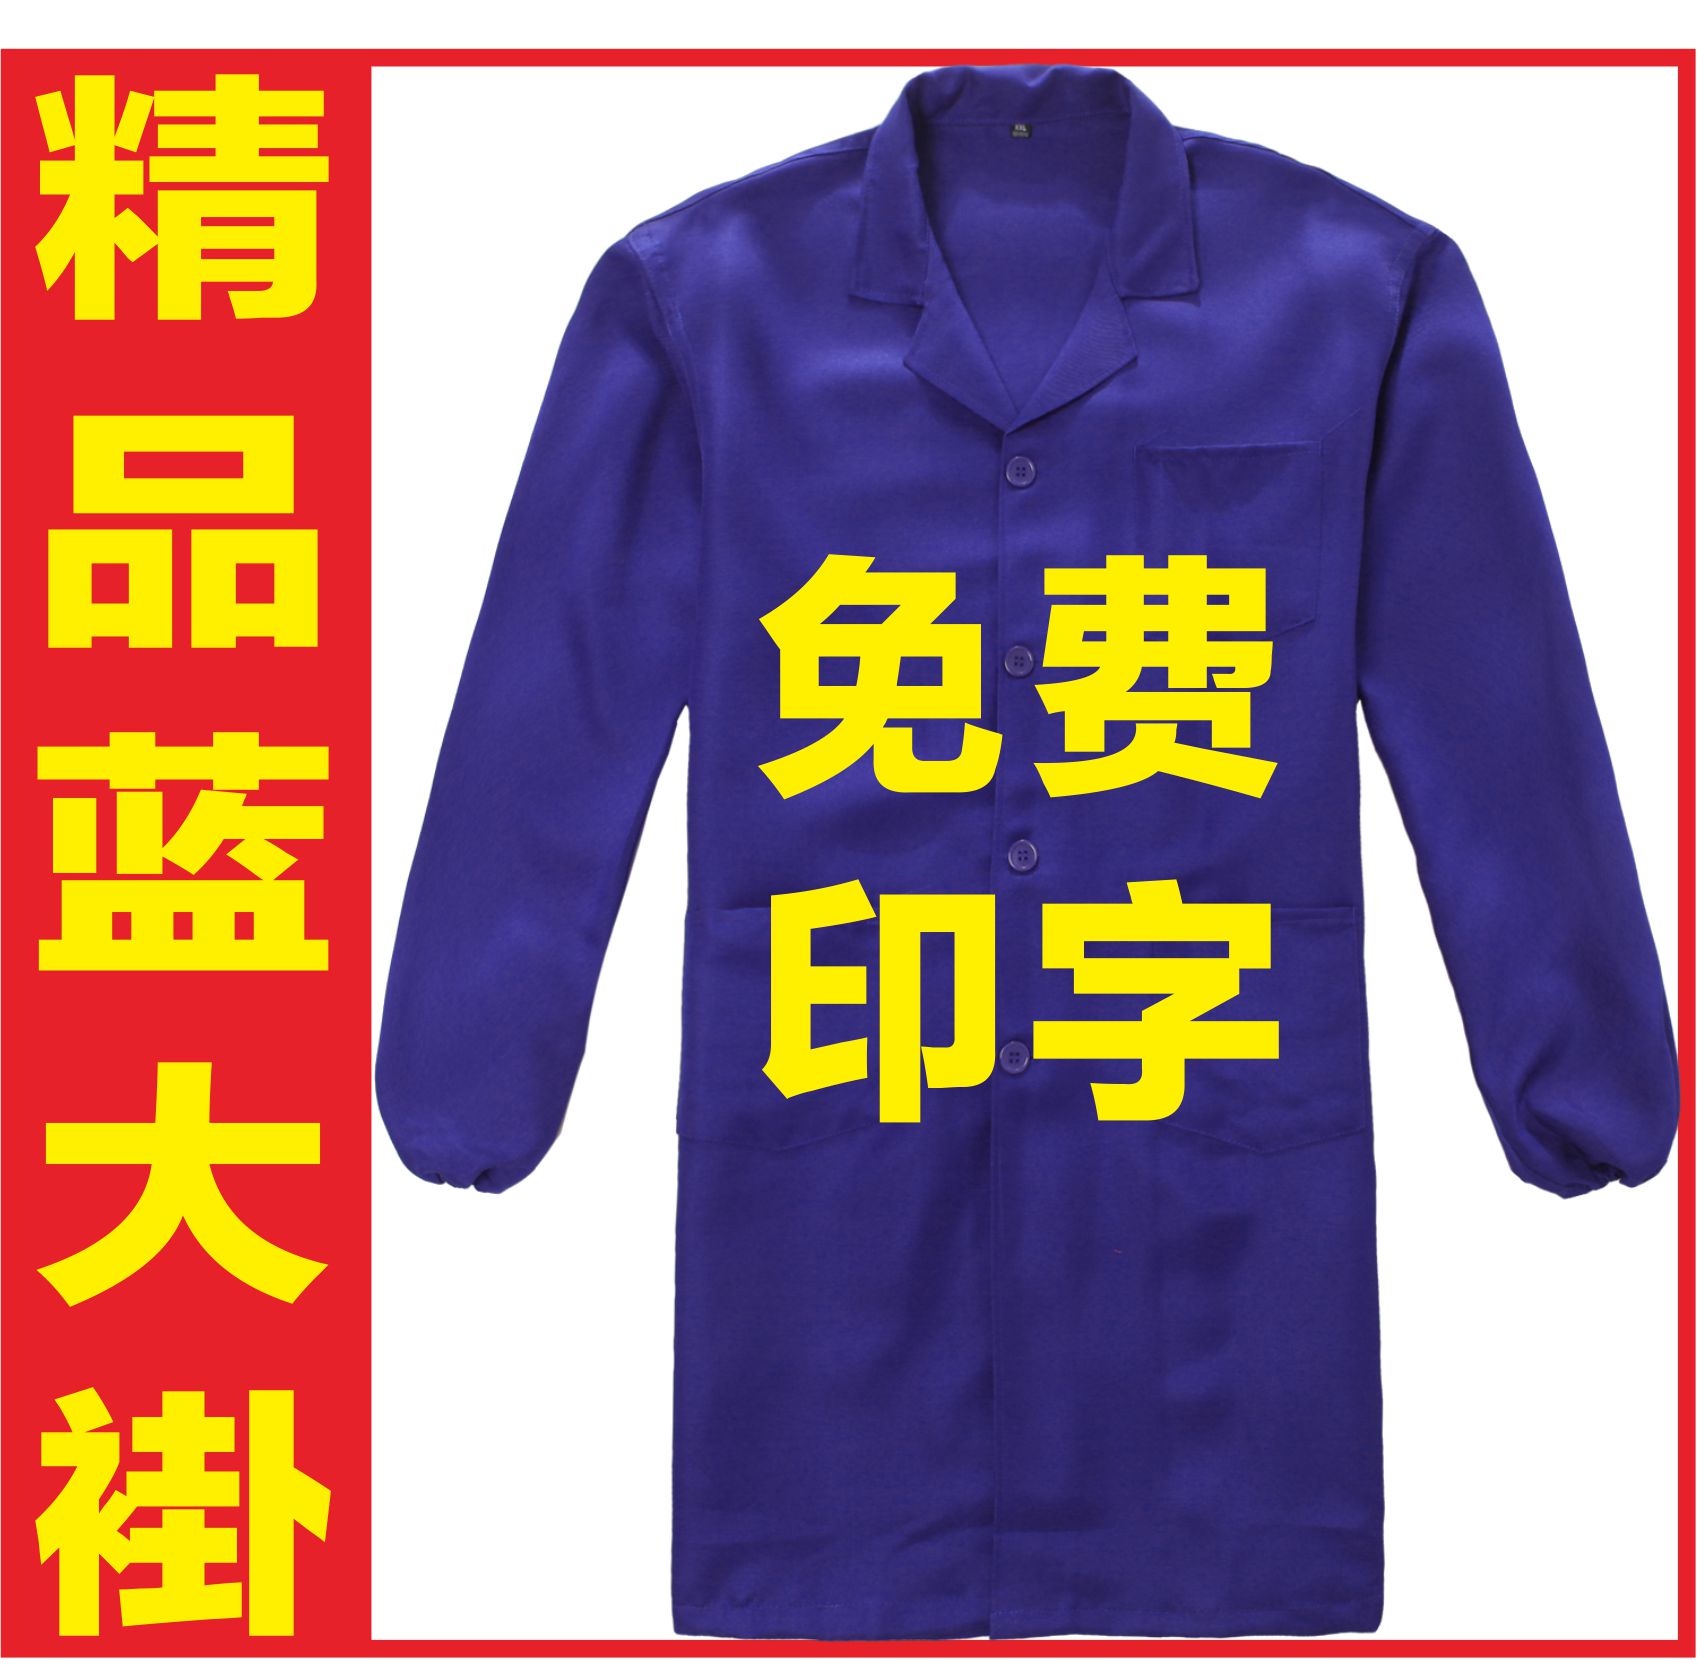 贵阳广告衫批发 文化衫设计 贵州T恤衫 蓝大褂订制